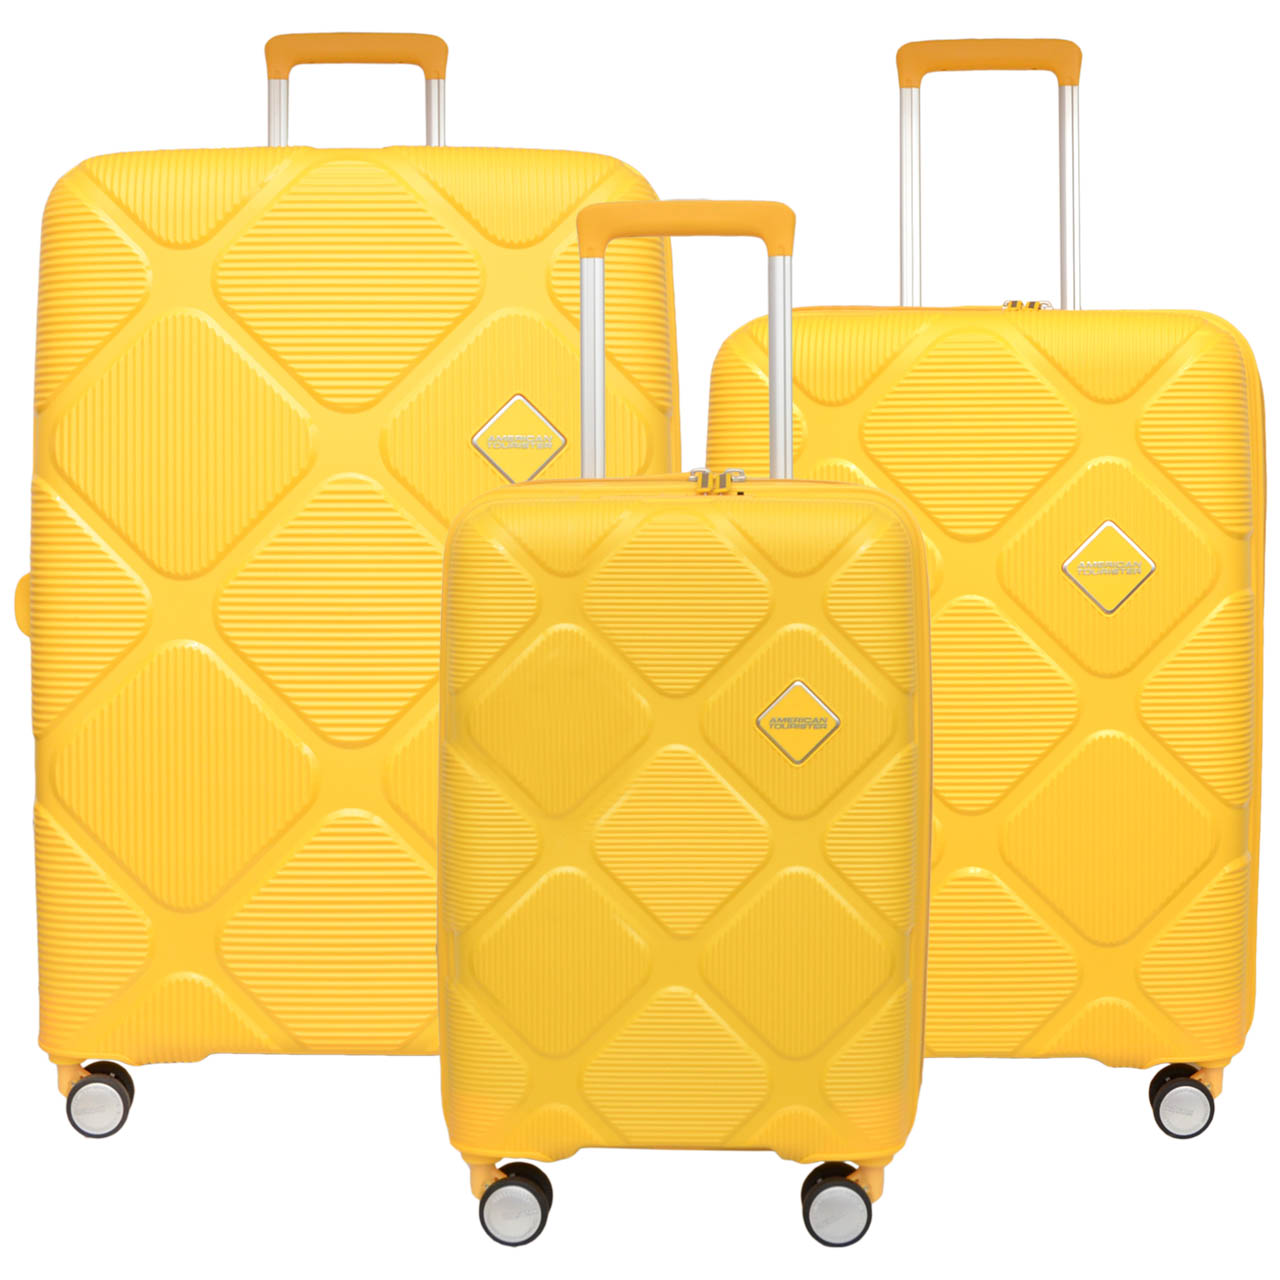 نکته خرید - قیمت روز مجموعه سه عددی چمدان امریکن توریستر مدل INSTAGON HJ4 خرید